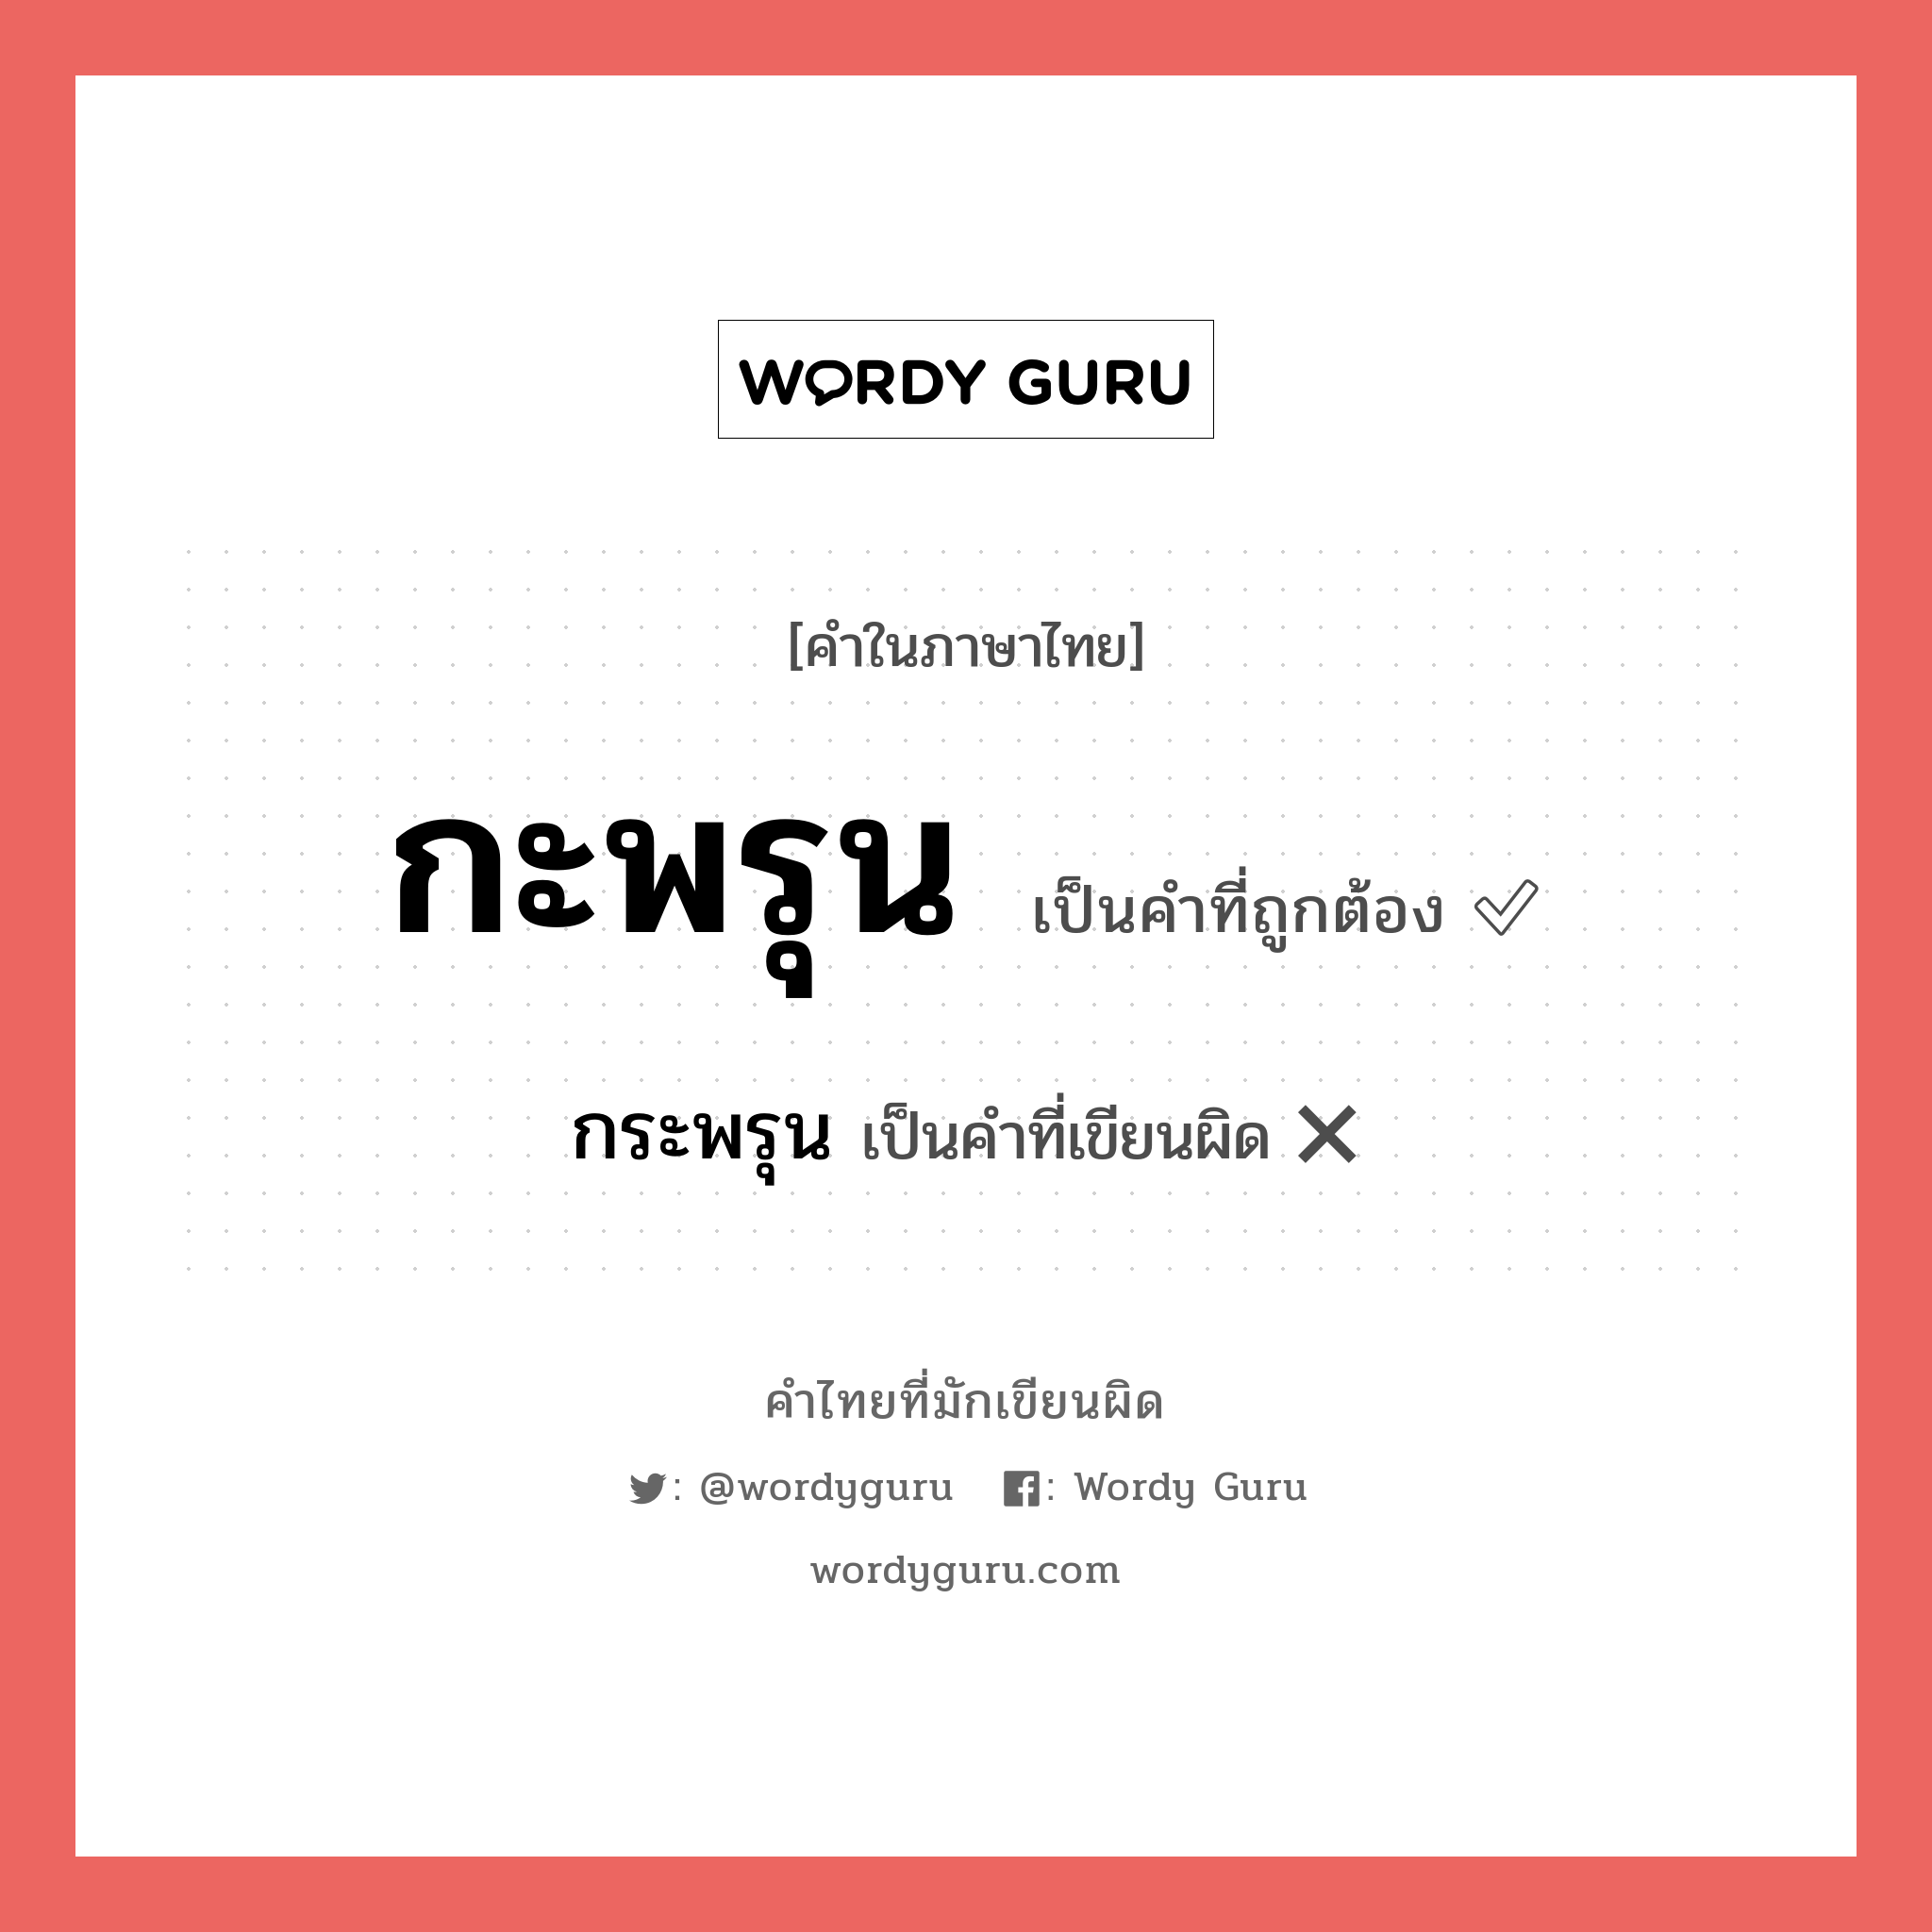 กะพรุน หรือ กระพรุน เขียนยังไง? คำไหนเขียนถูก?, คำในภาษาไทยที่มักเขียนผิด กะพรุน คำที่ผิด ❌ กระพรุน